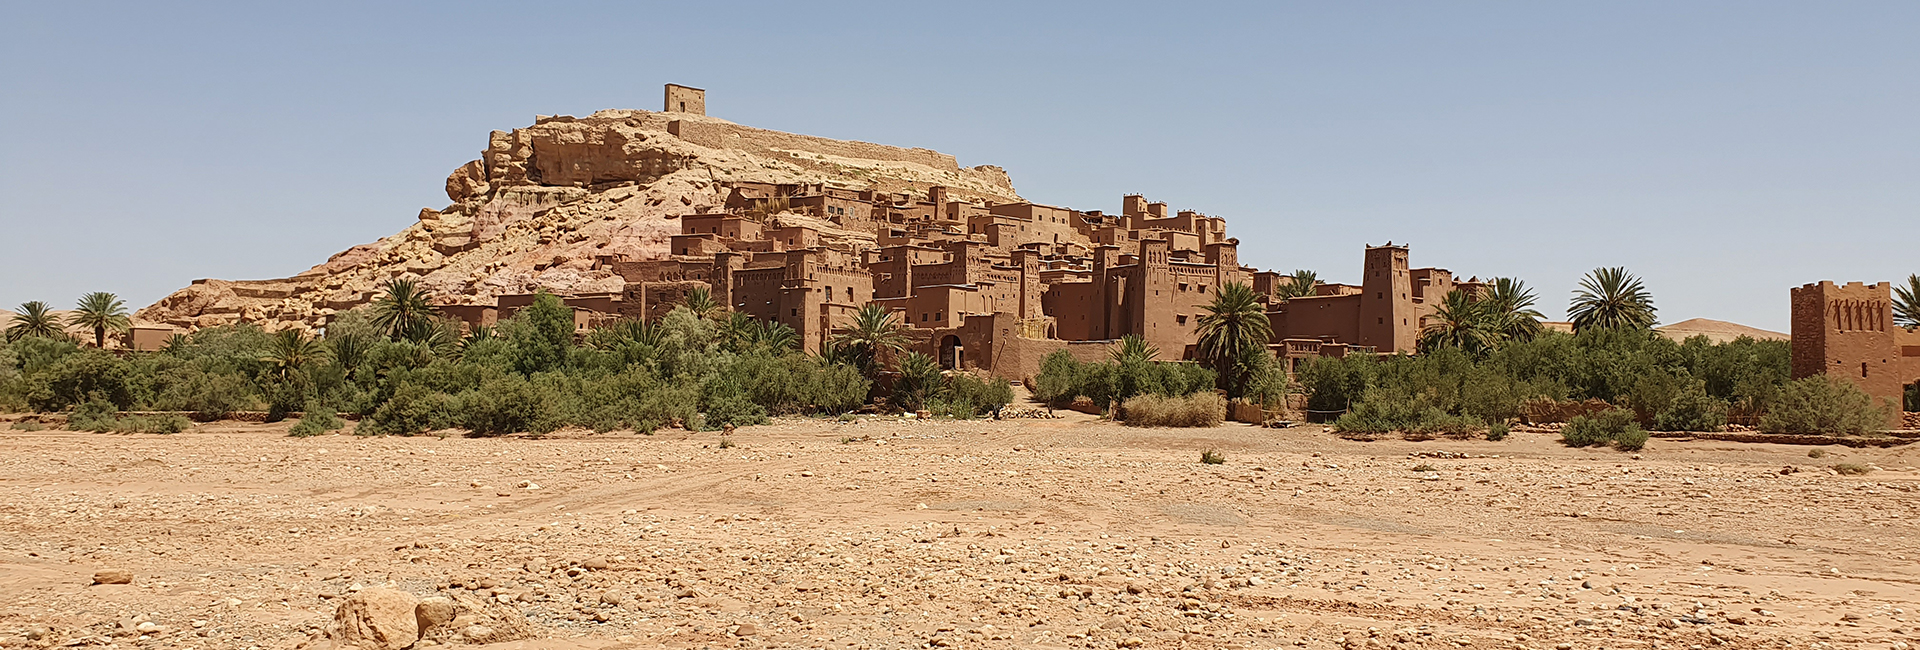 The Aït Ben Haddou ksar in Morocco